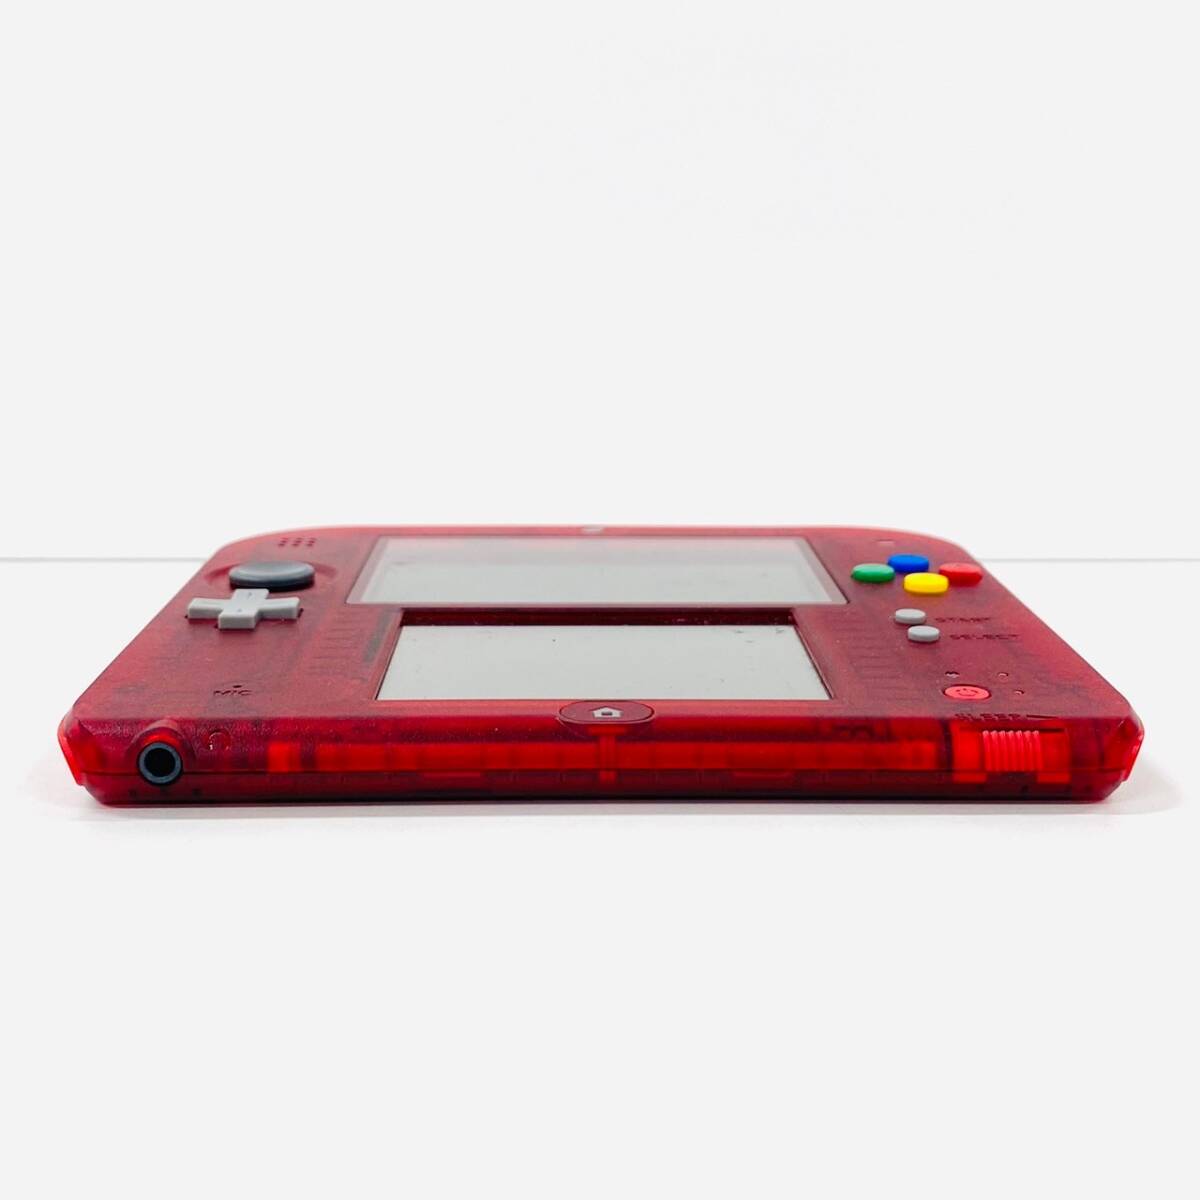 H617-Z13-221 Nintendo ニンテンドー 2DS ポケットモンスター 赤 限定パック 箱付き FTR-001 本体 ゲーム機 玩具 おもちゃ ④_画像6